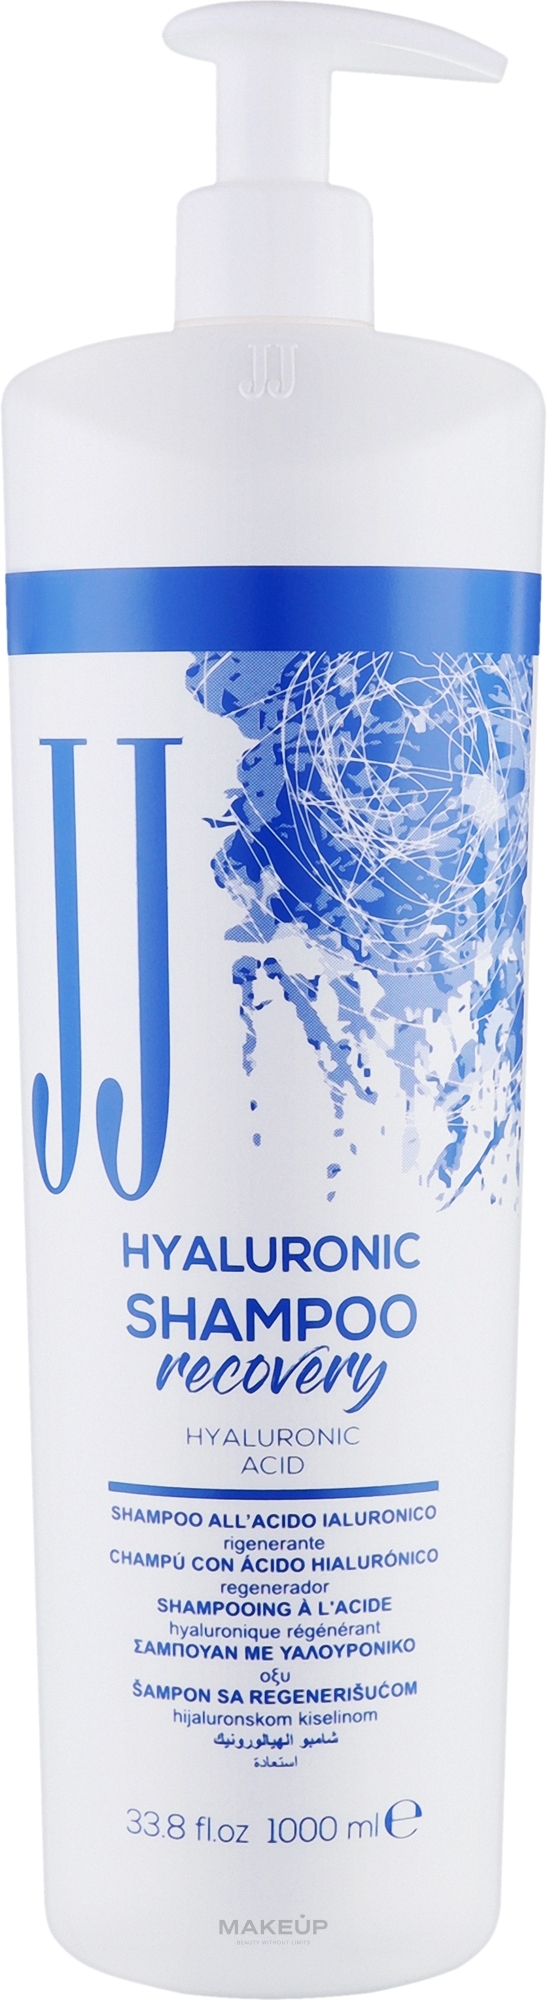 Гіалуроновий шампунь для волосся - JJ Hyaluronic Shampoo Recovery — фото 1000ml